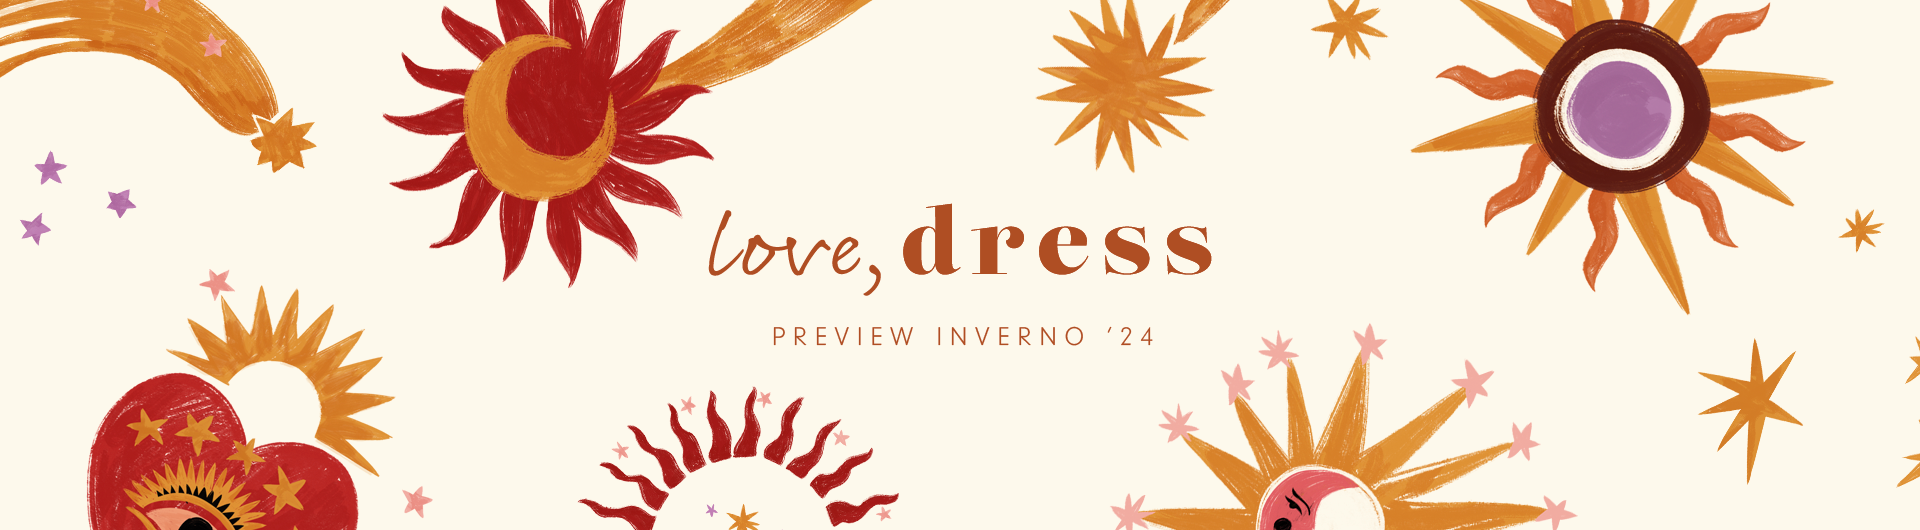 Preview Liberdade Love Dress. A coleção inclui vestidos, blusas, calças, macacões, saias, casacoes e mais